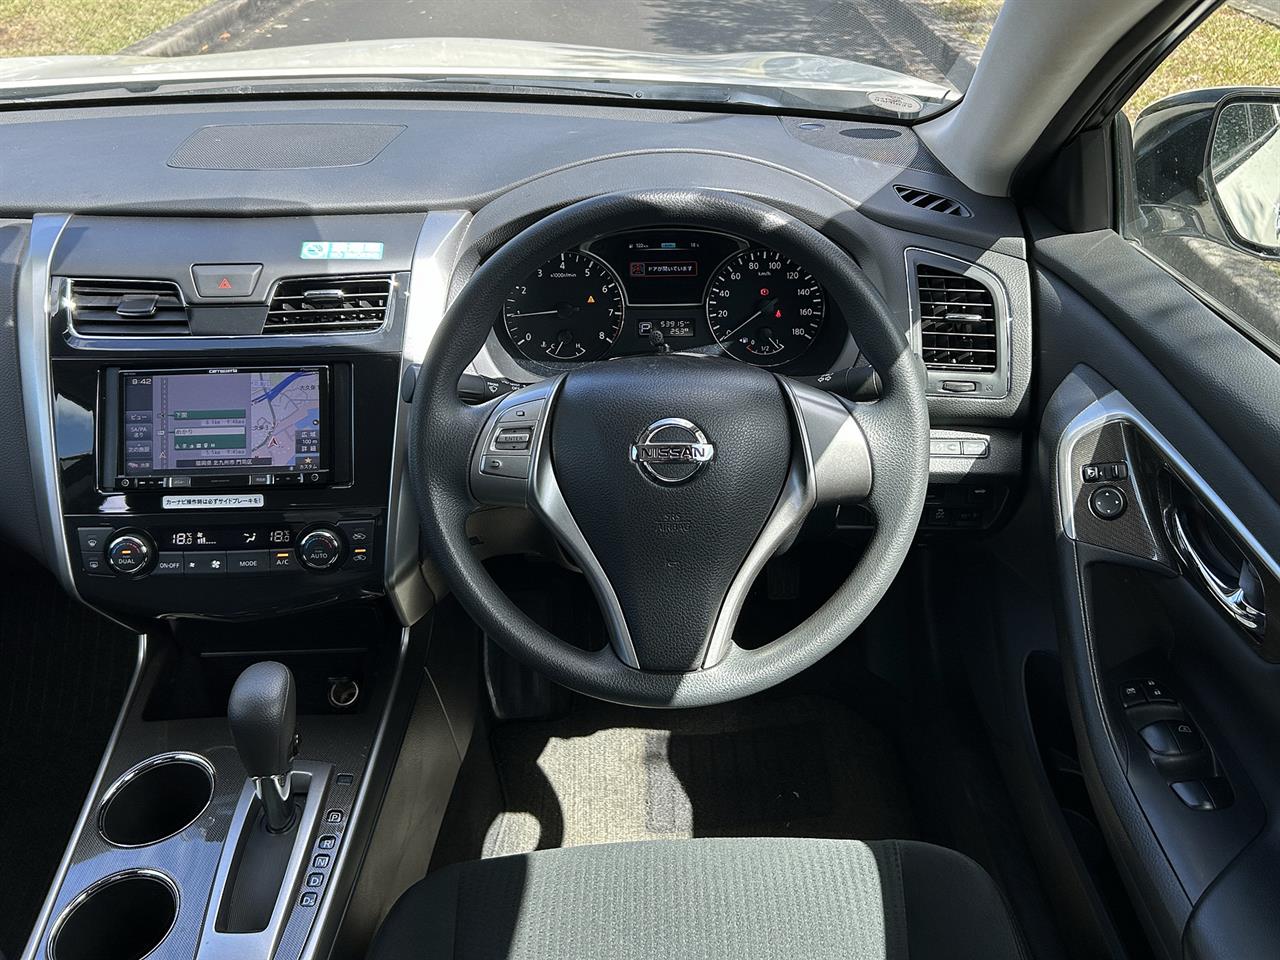 2018 Nissan Teana